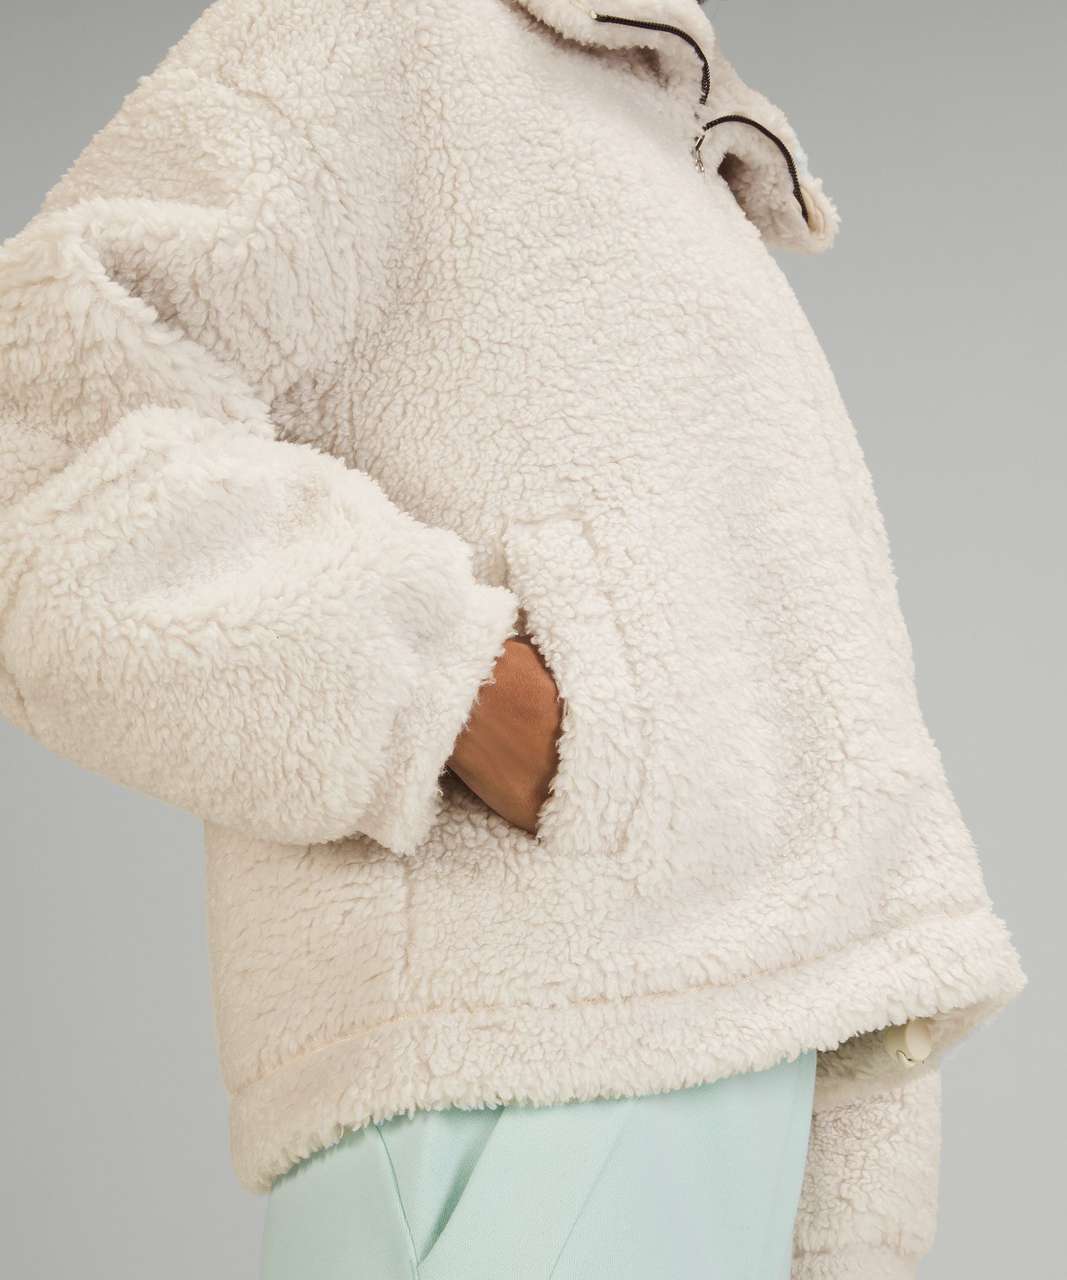 Lululemon Cinchable Fleece Zip Up - Coats & jackets